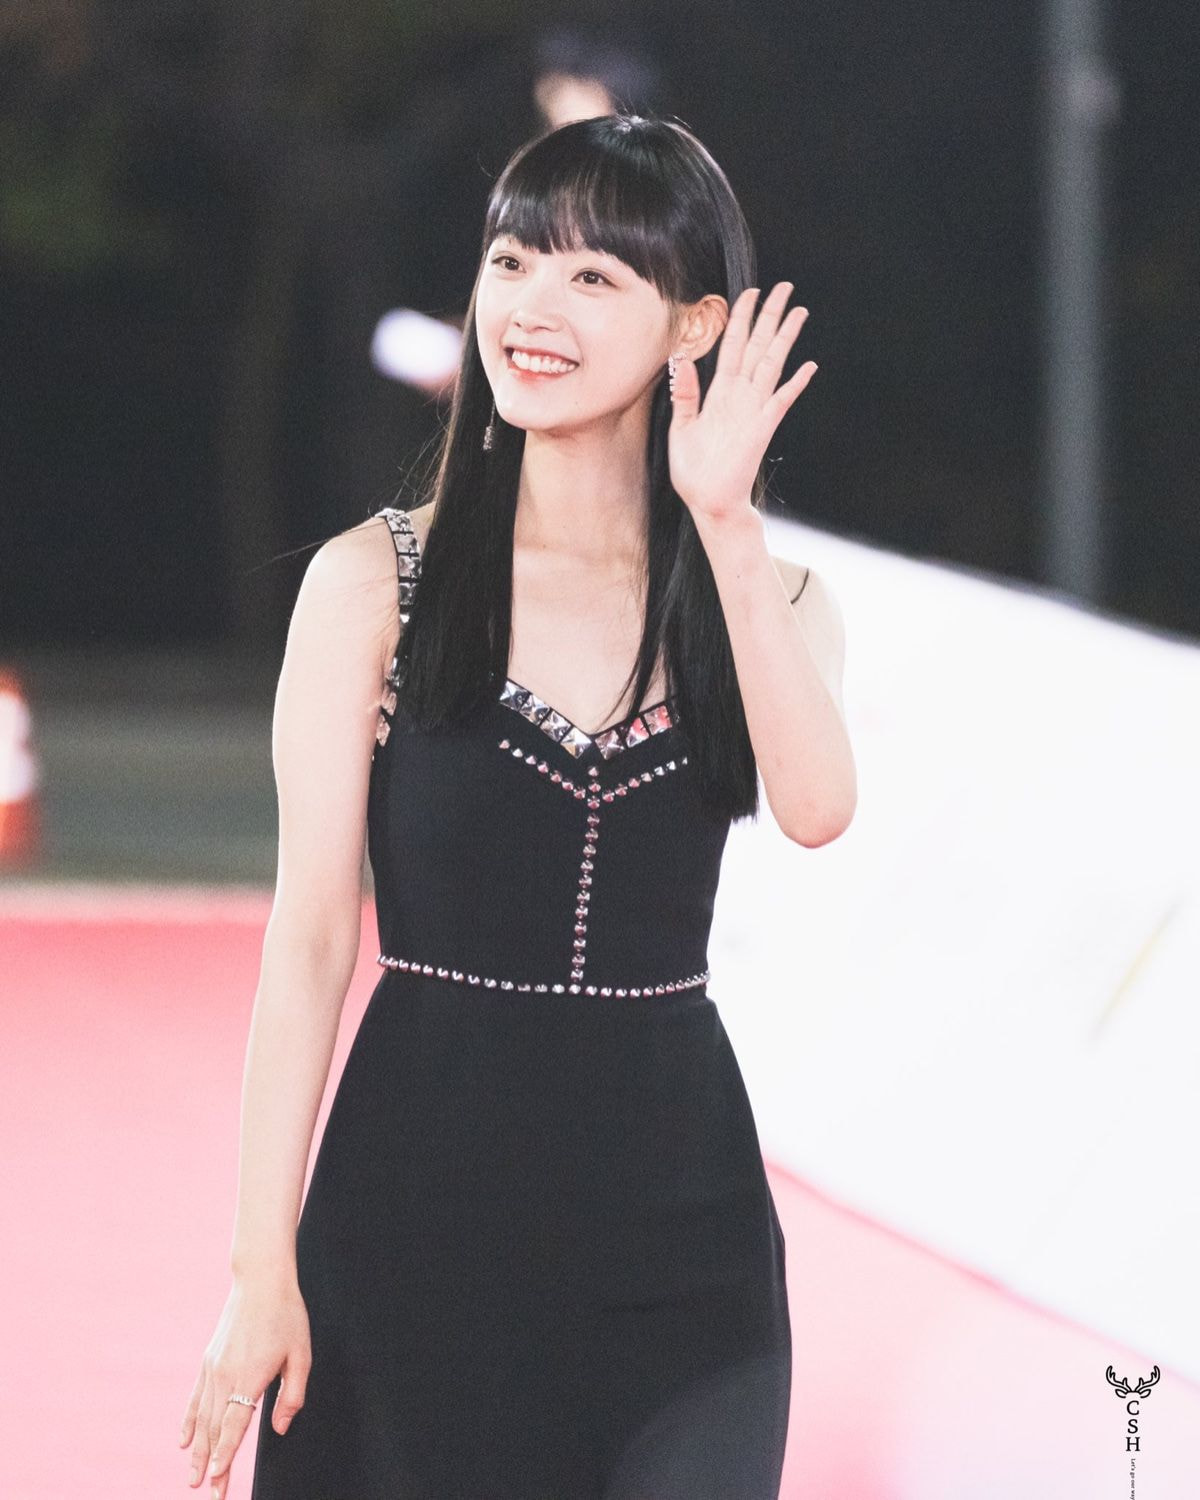 Trên thảm đỏ, Lee Yoo Mi cũng rất biết cách để bản thân nổi bật khi theo đuổi phong cách có phần sexy, quyến rũ hơn với những bộ váy dáng dài, khoét ngực vừa phải.